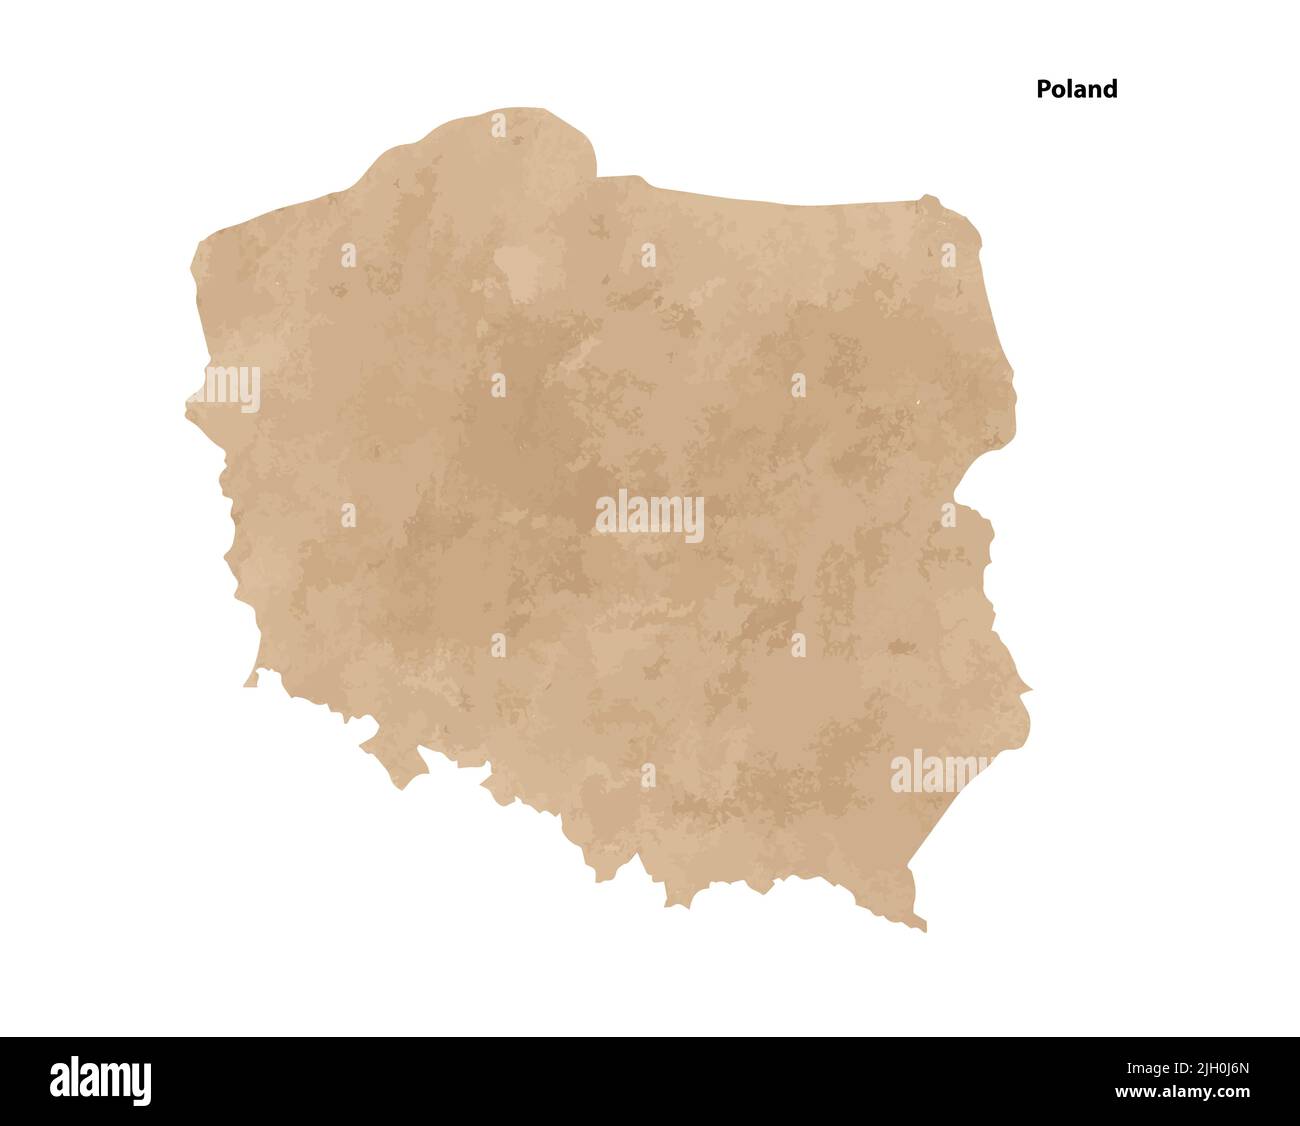 Antiguo mapa texturizado de papel de época del país de Polonia - ilustración de vectores Ilustración del Vector